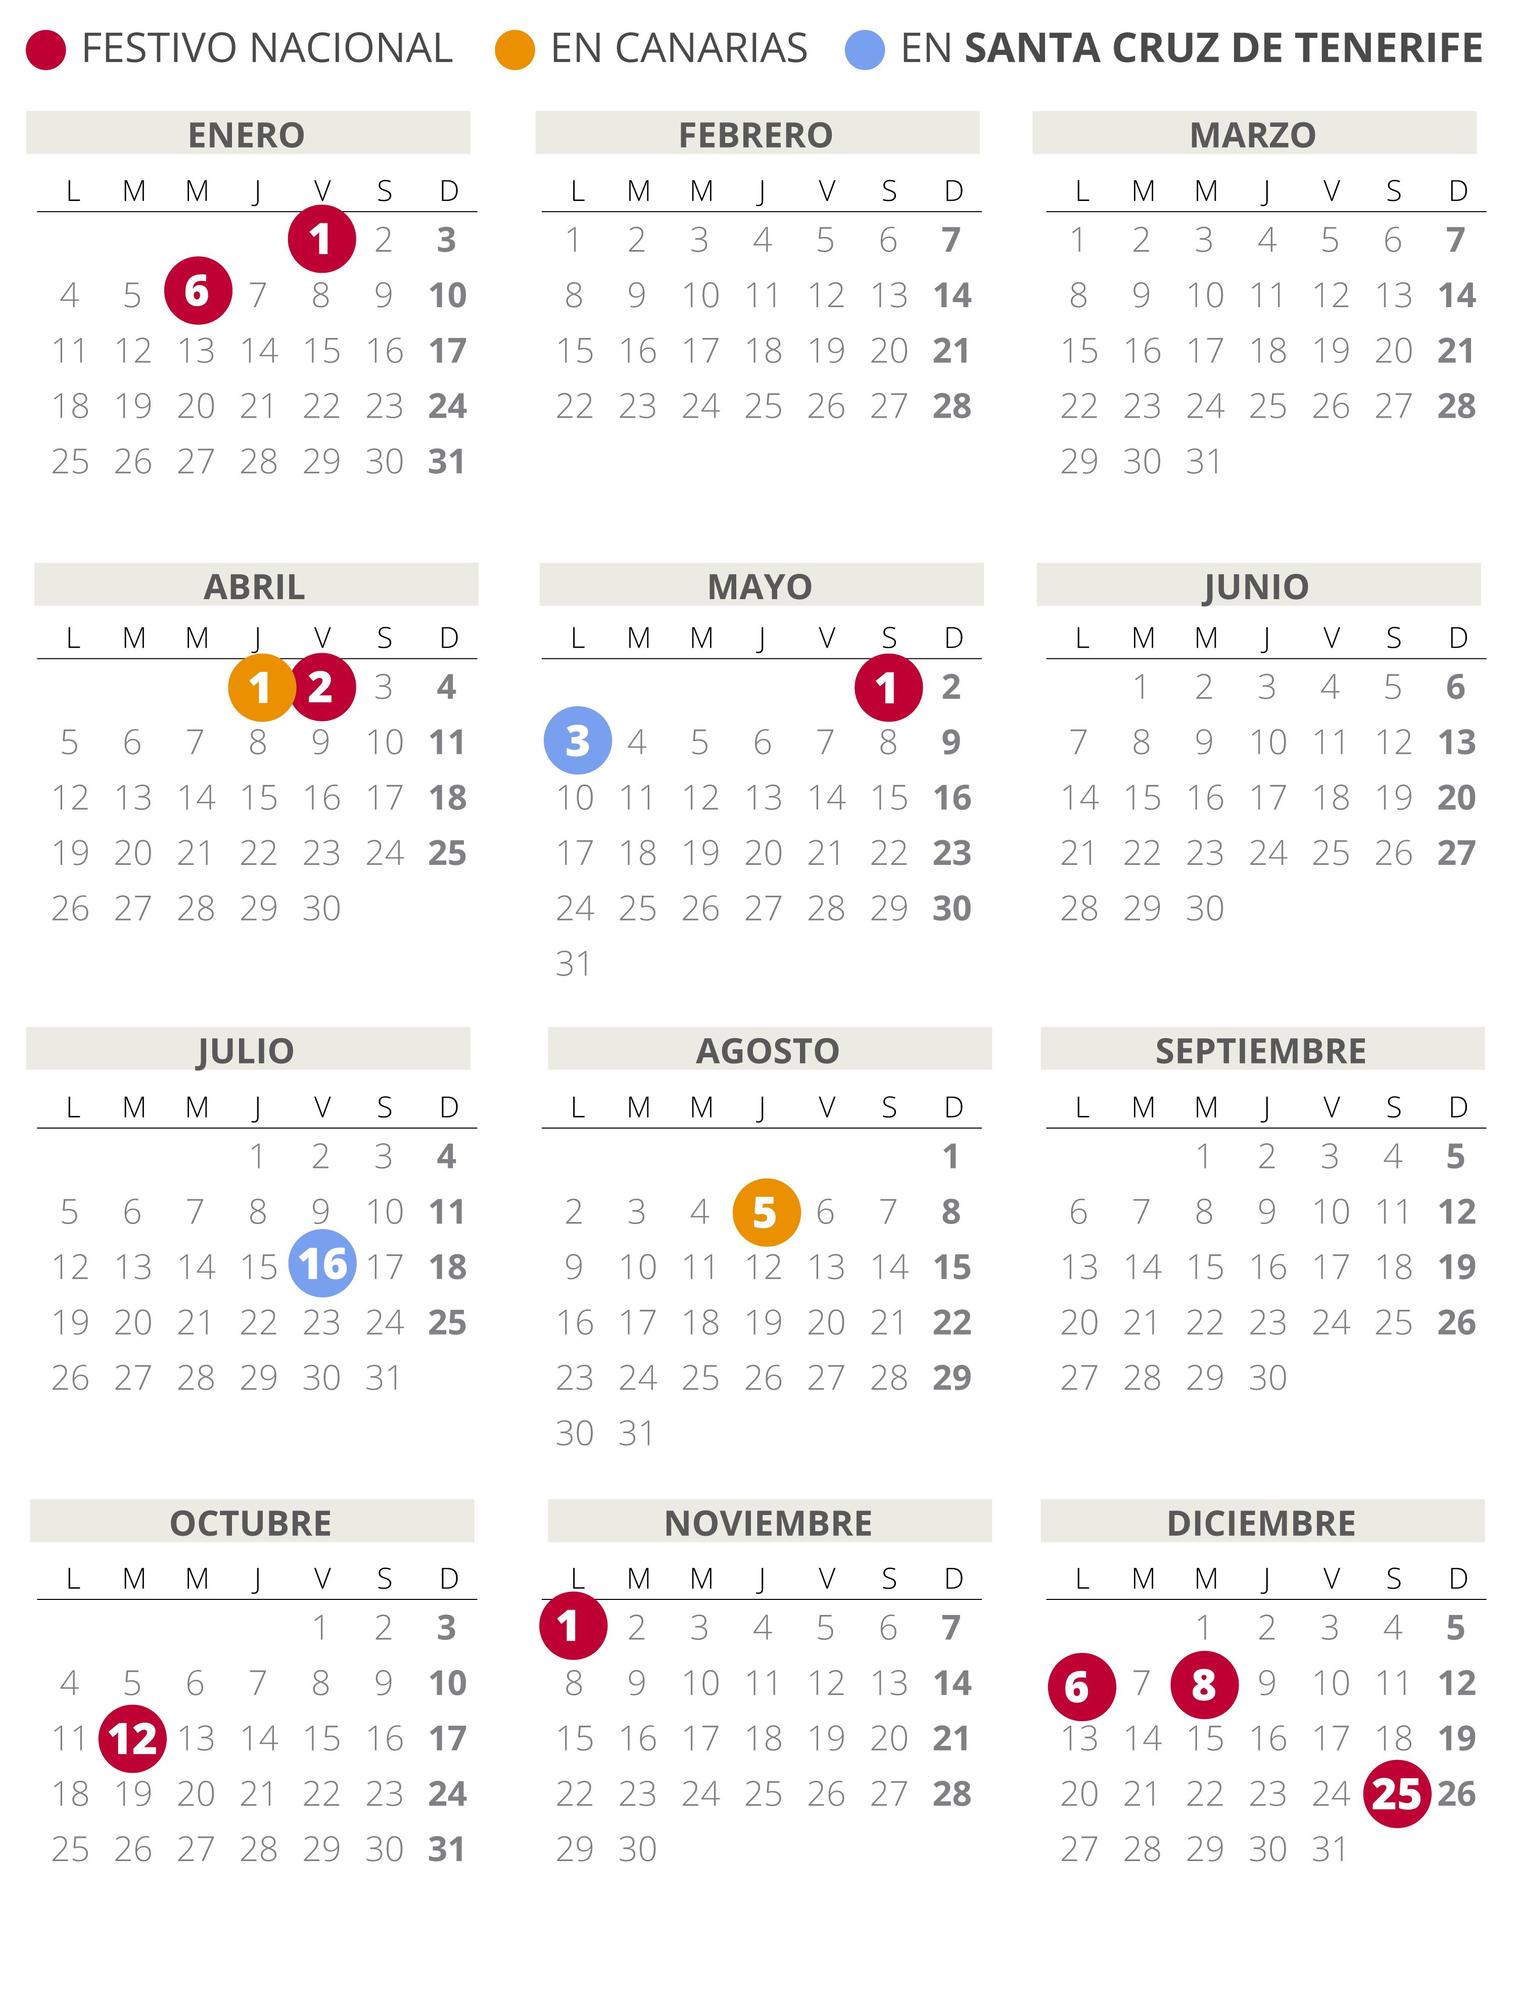 Calendario laboral de Santa Cruz de Tenerife del 2021 (con todos los festivos)